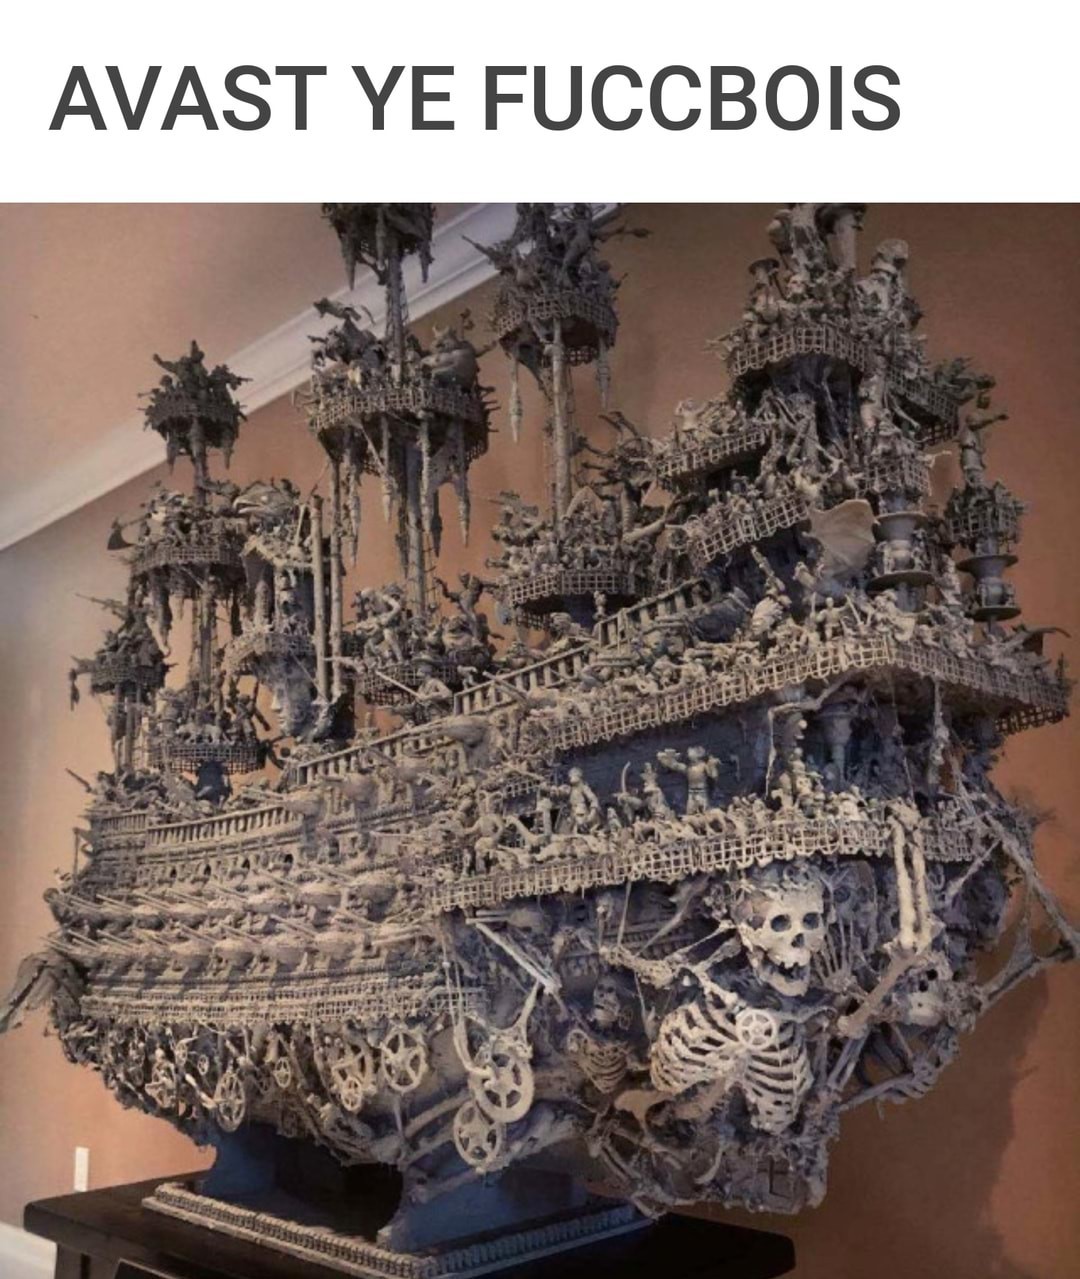 Spooky Ship for Spooktober - meme